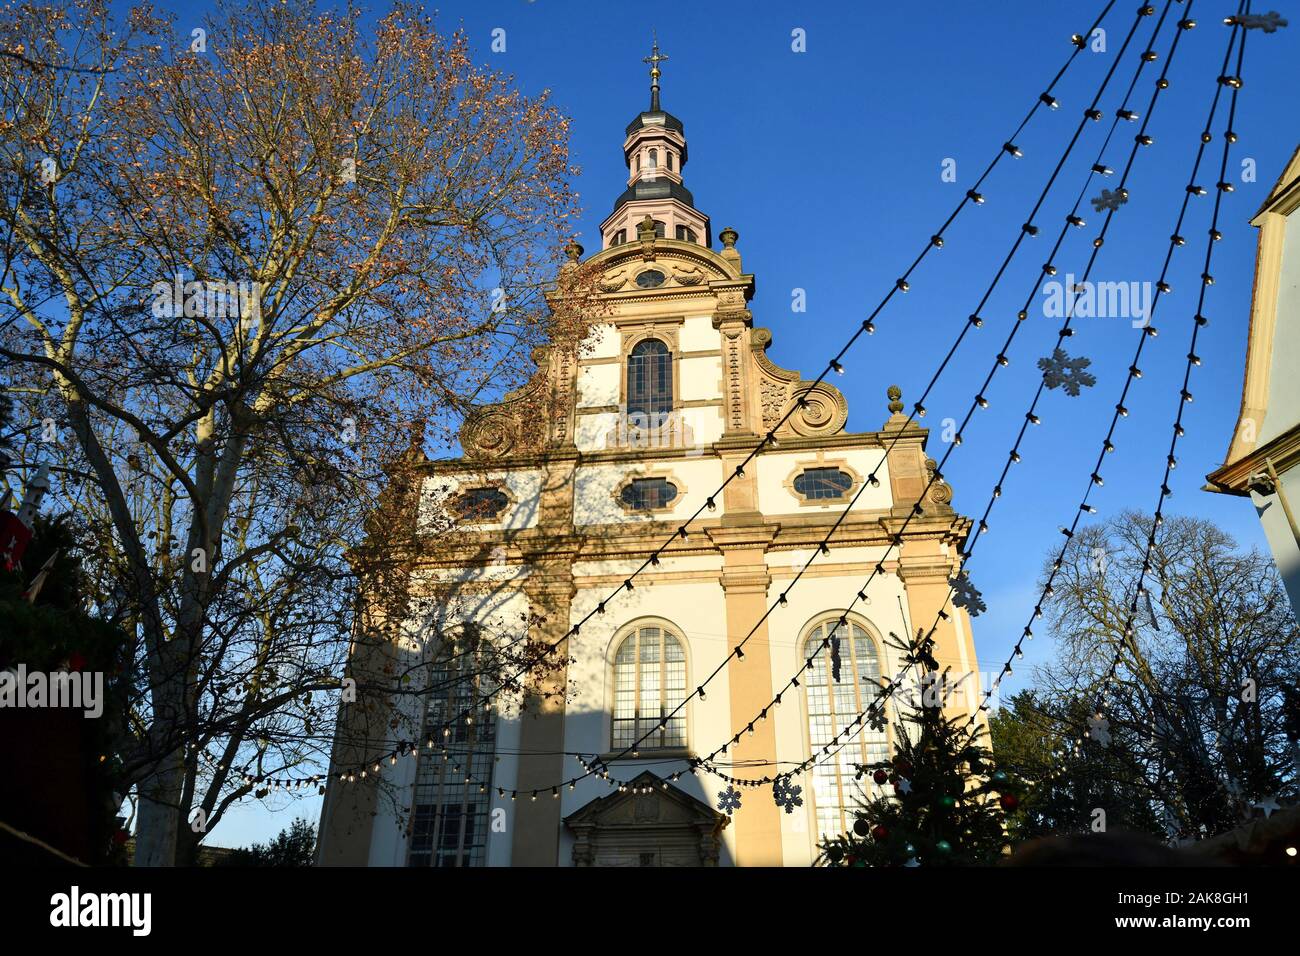 L'église Trinity, appelée "reifaltigkeitskirche' en allemand, d'un baroque, église paroissiale protestante à Speyer en Allemagne Banque D'Images